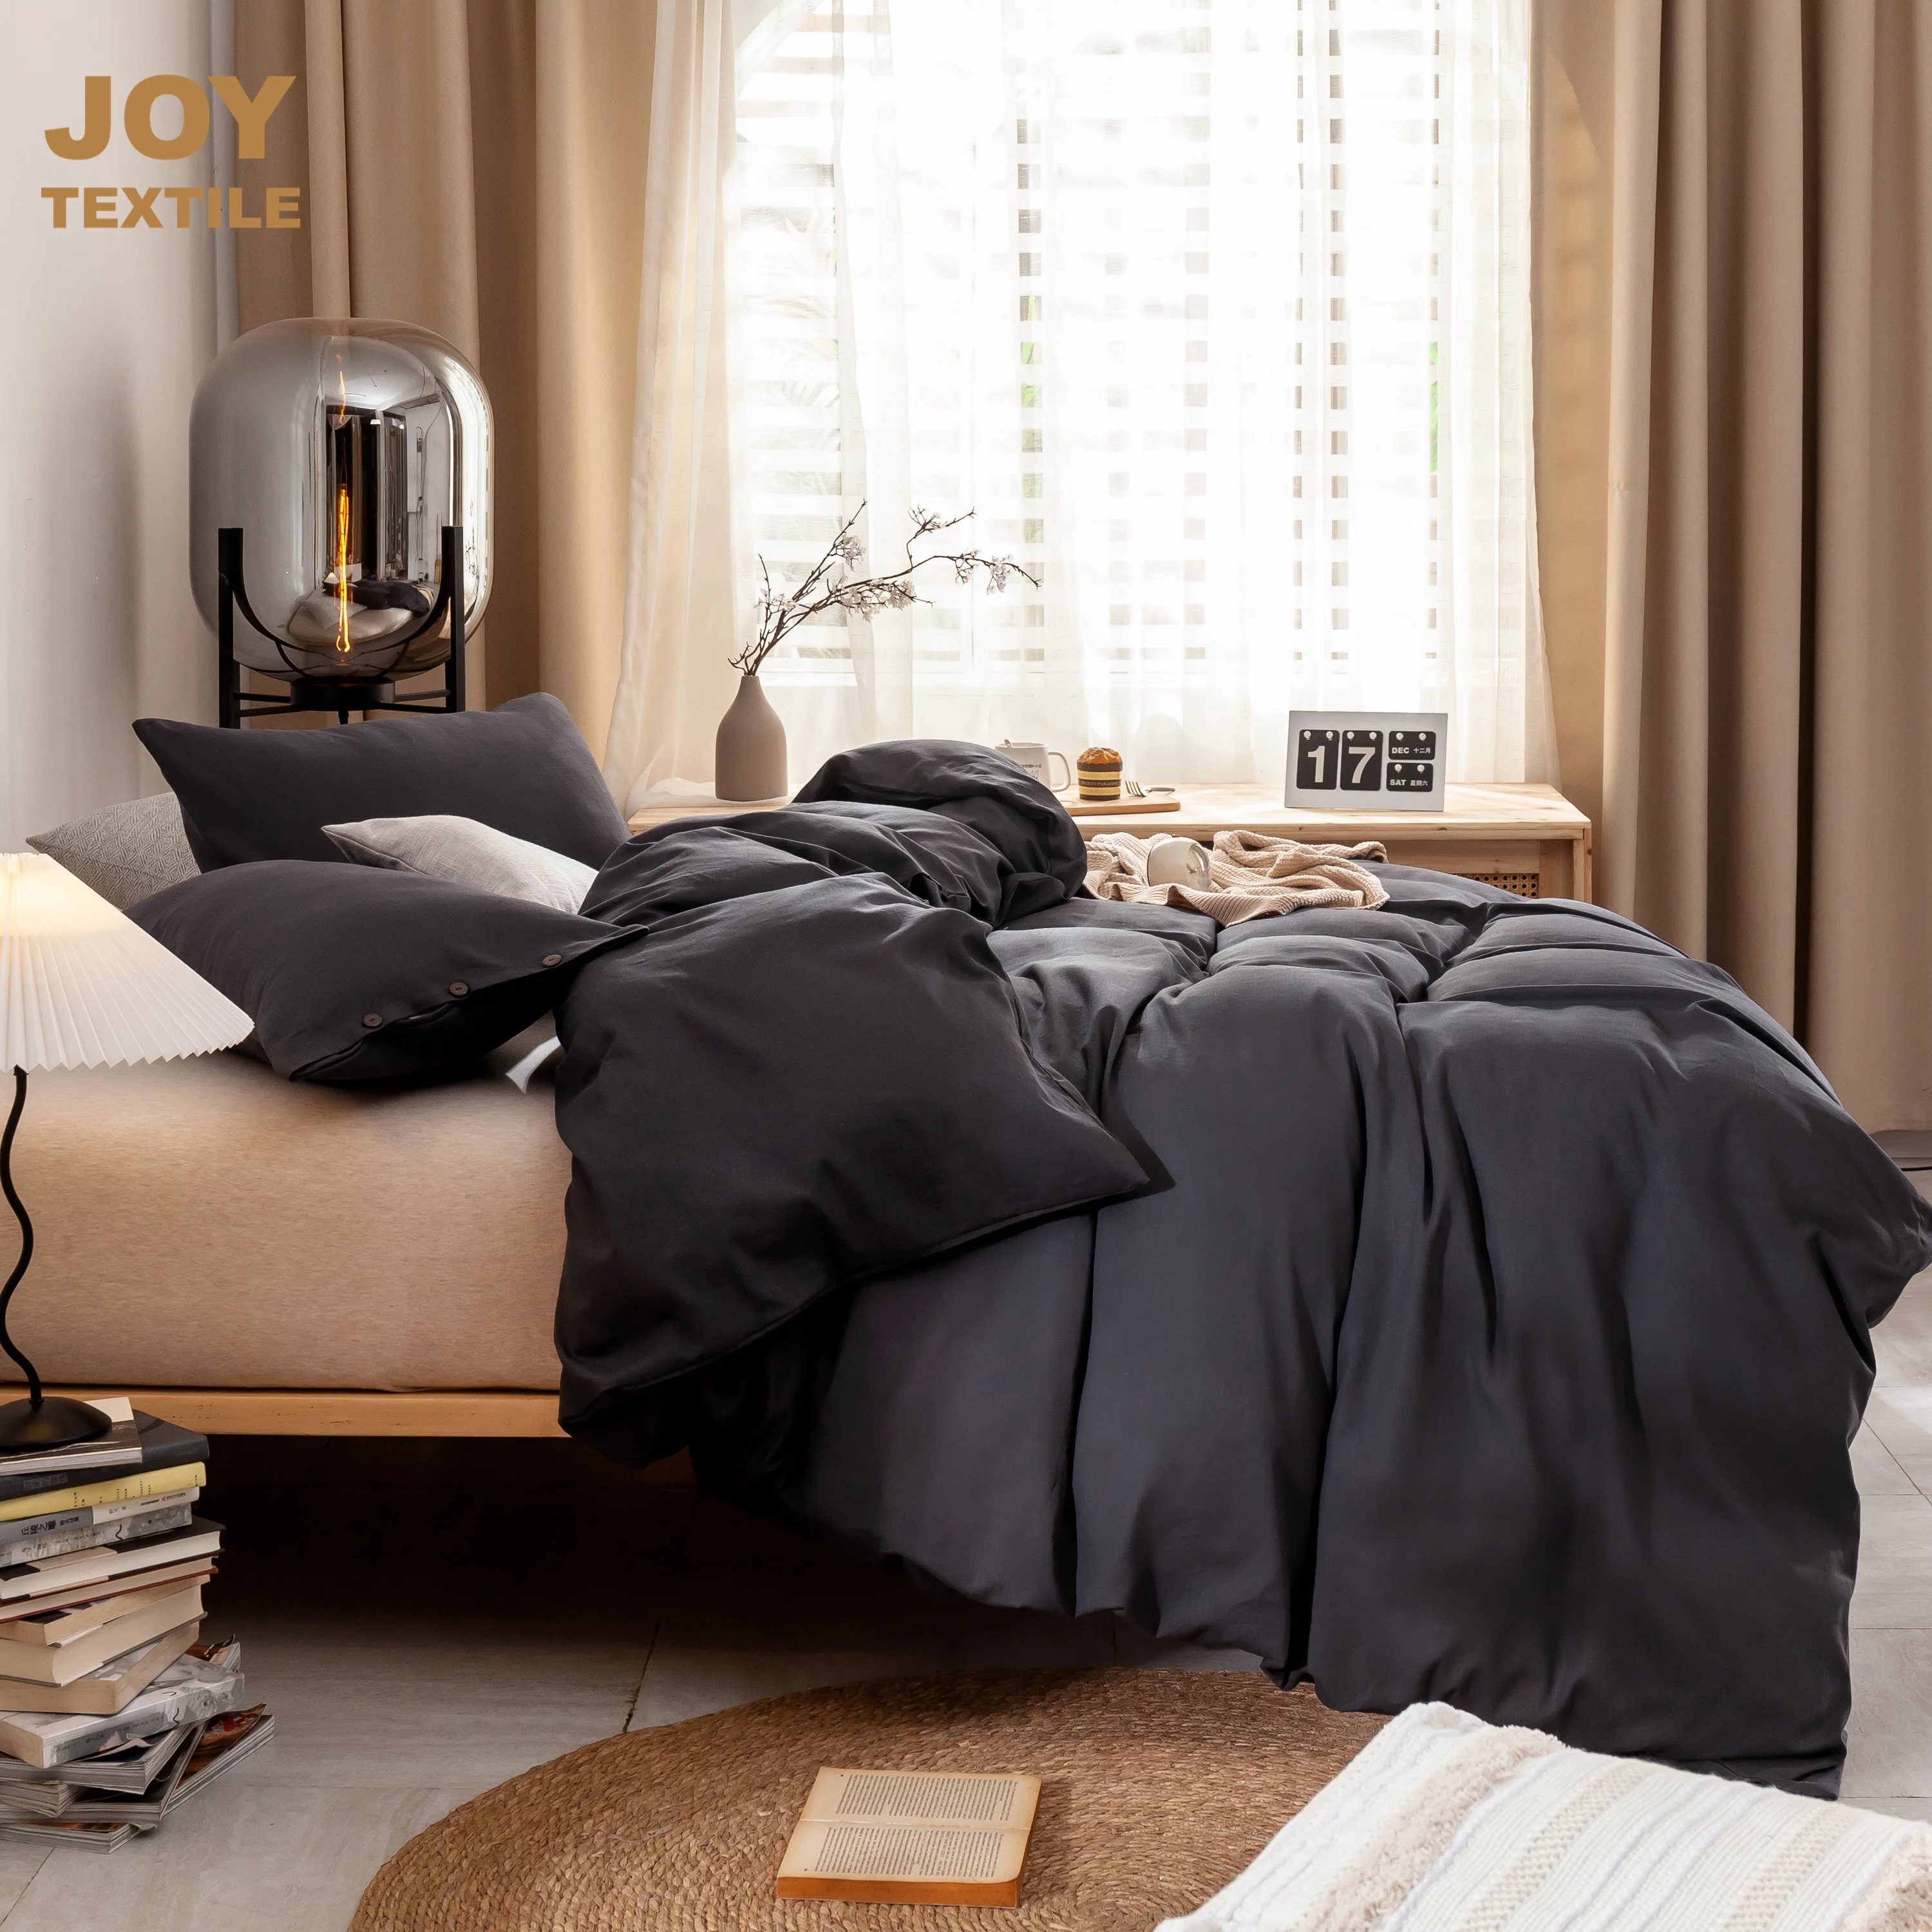 

Joy Textile 55% Linen 45% Cotton Bedding Sets, Duvet Cover Set Plain Soft Nordic Double Bed Cover Pillow Case for Bedroom Home